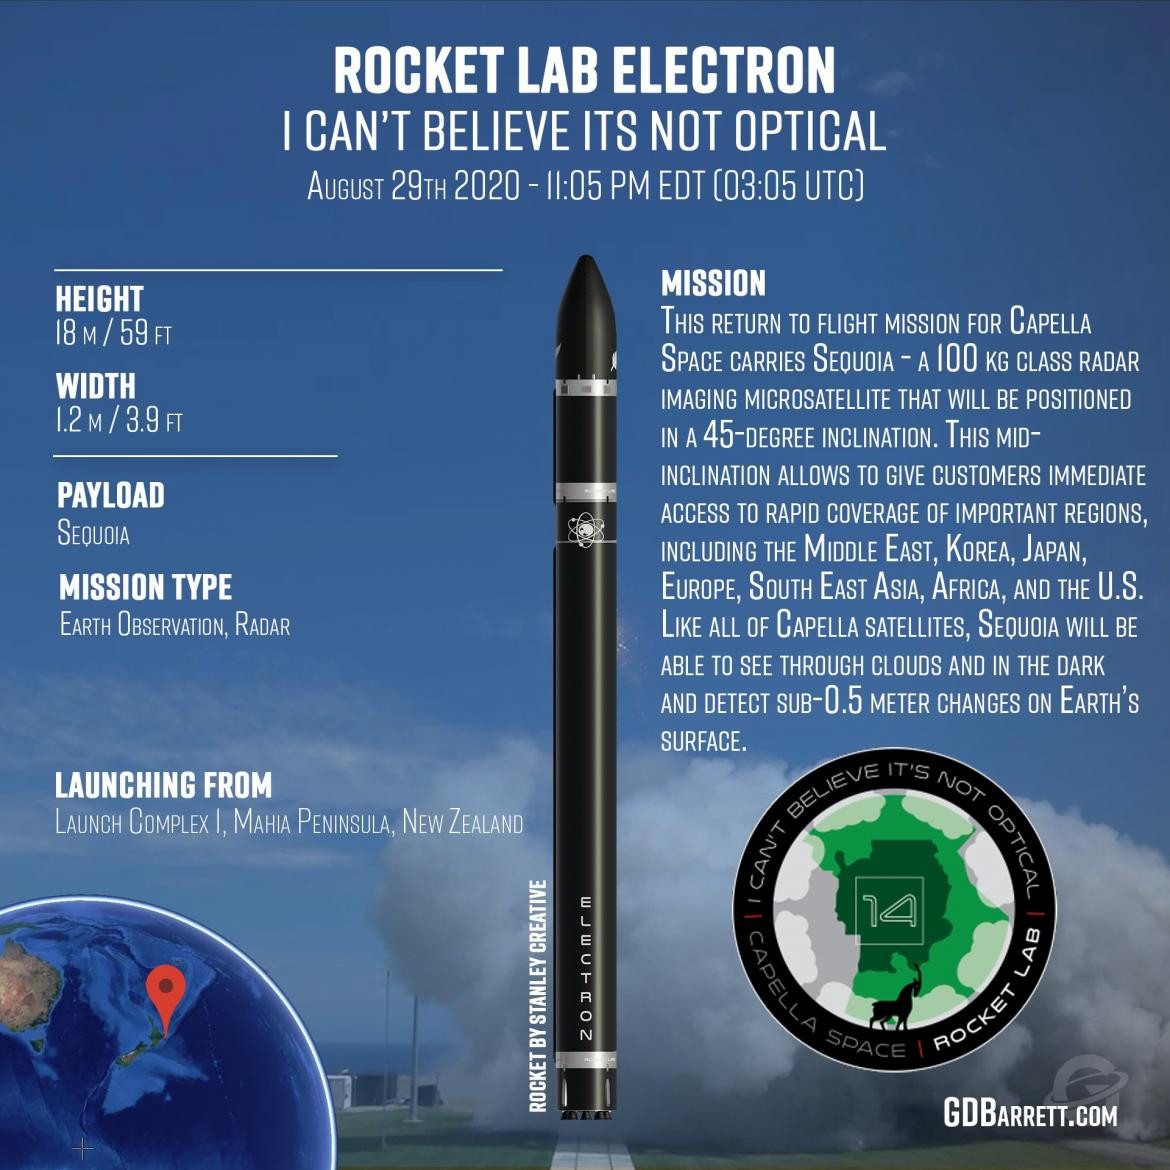 lanzamientos, NASA, satélites